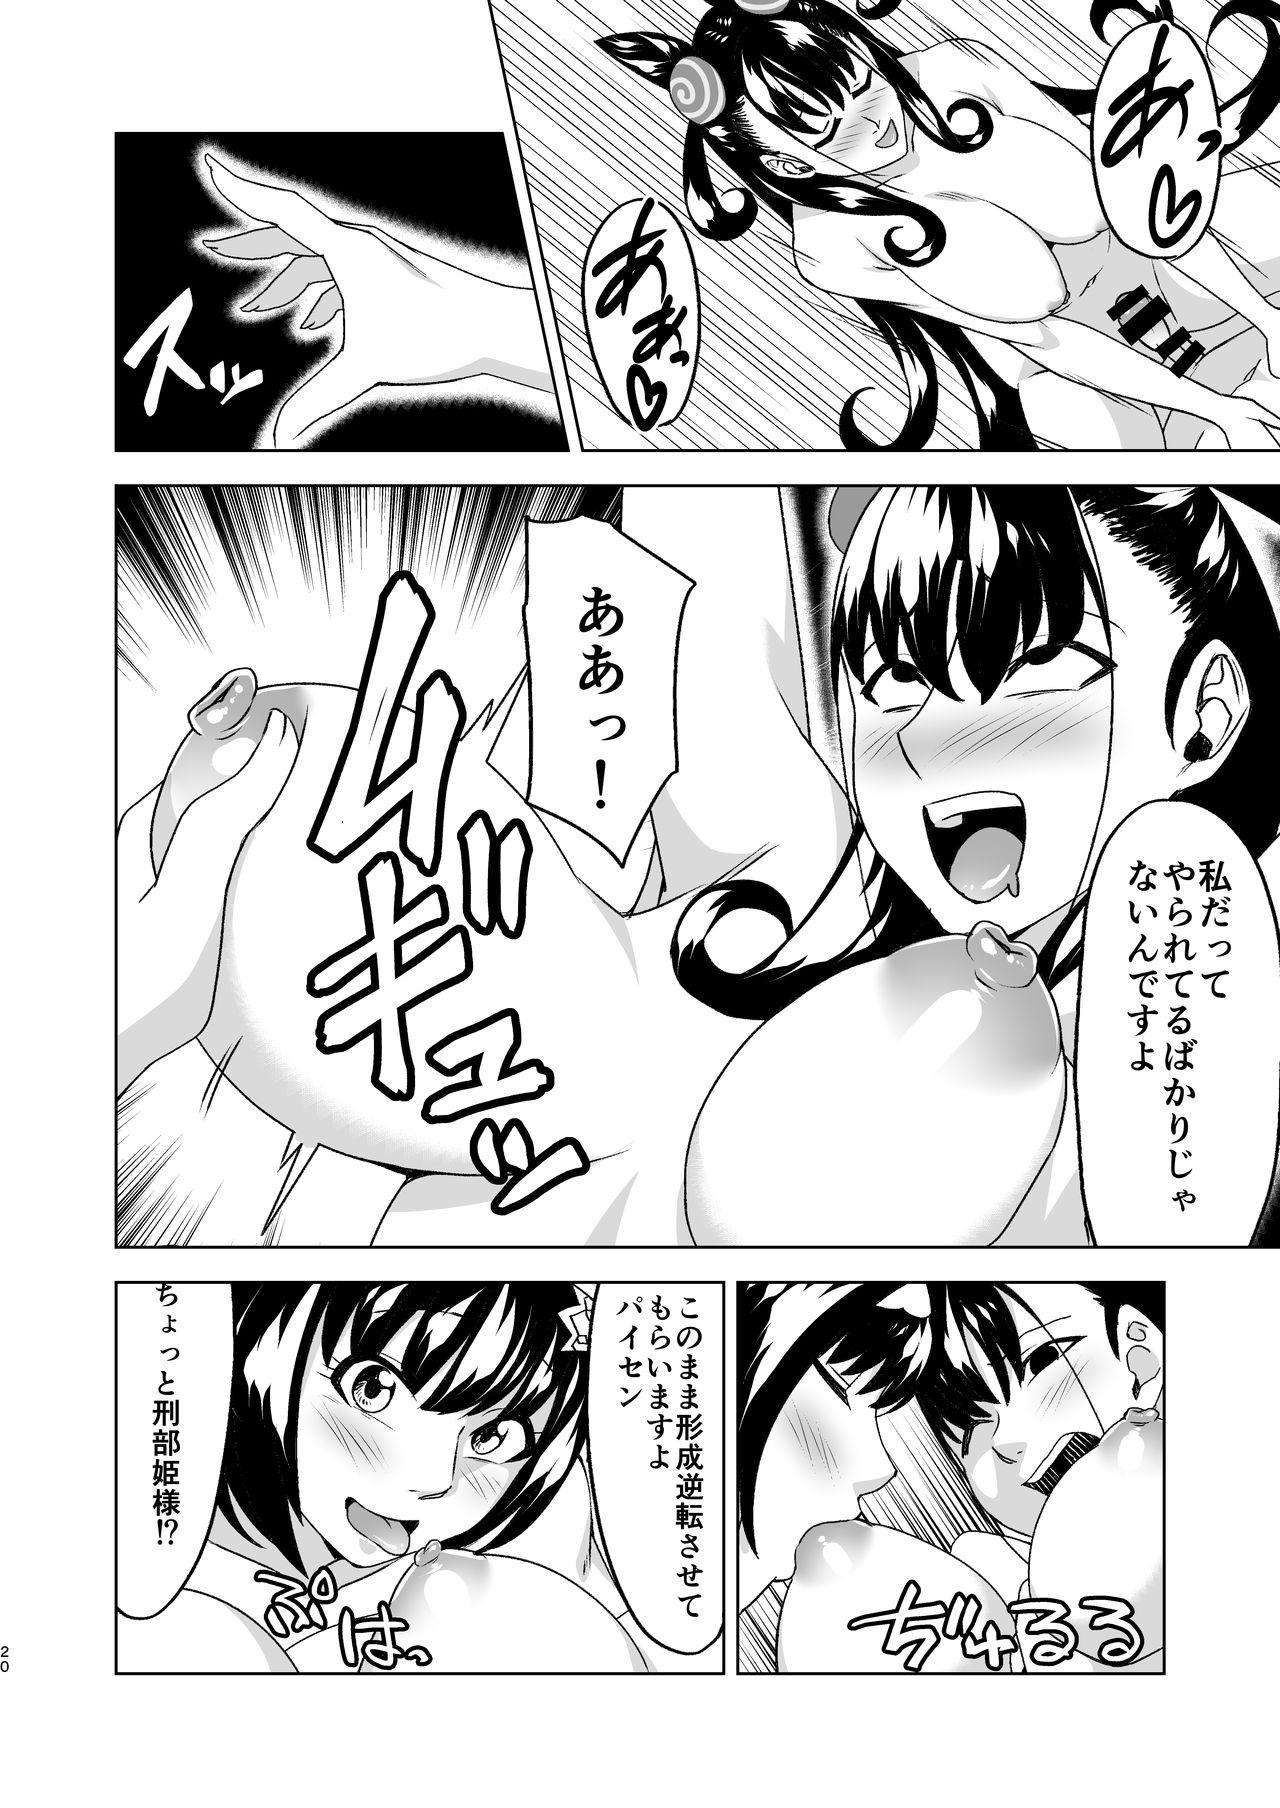 Murasaki Shikibu x Osakabehime Sex Training 19